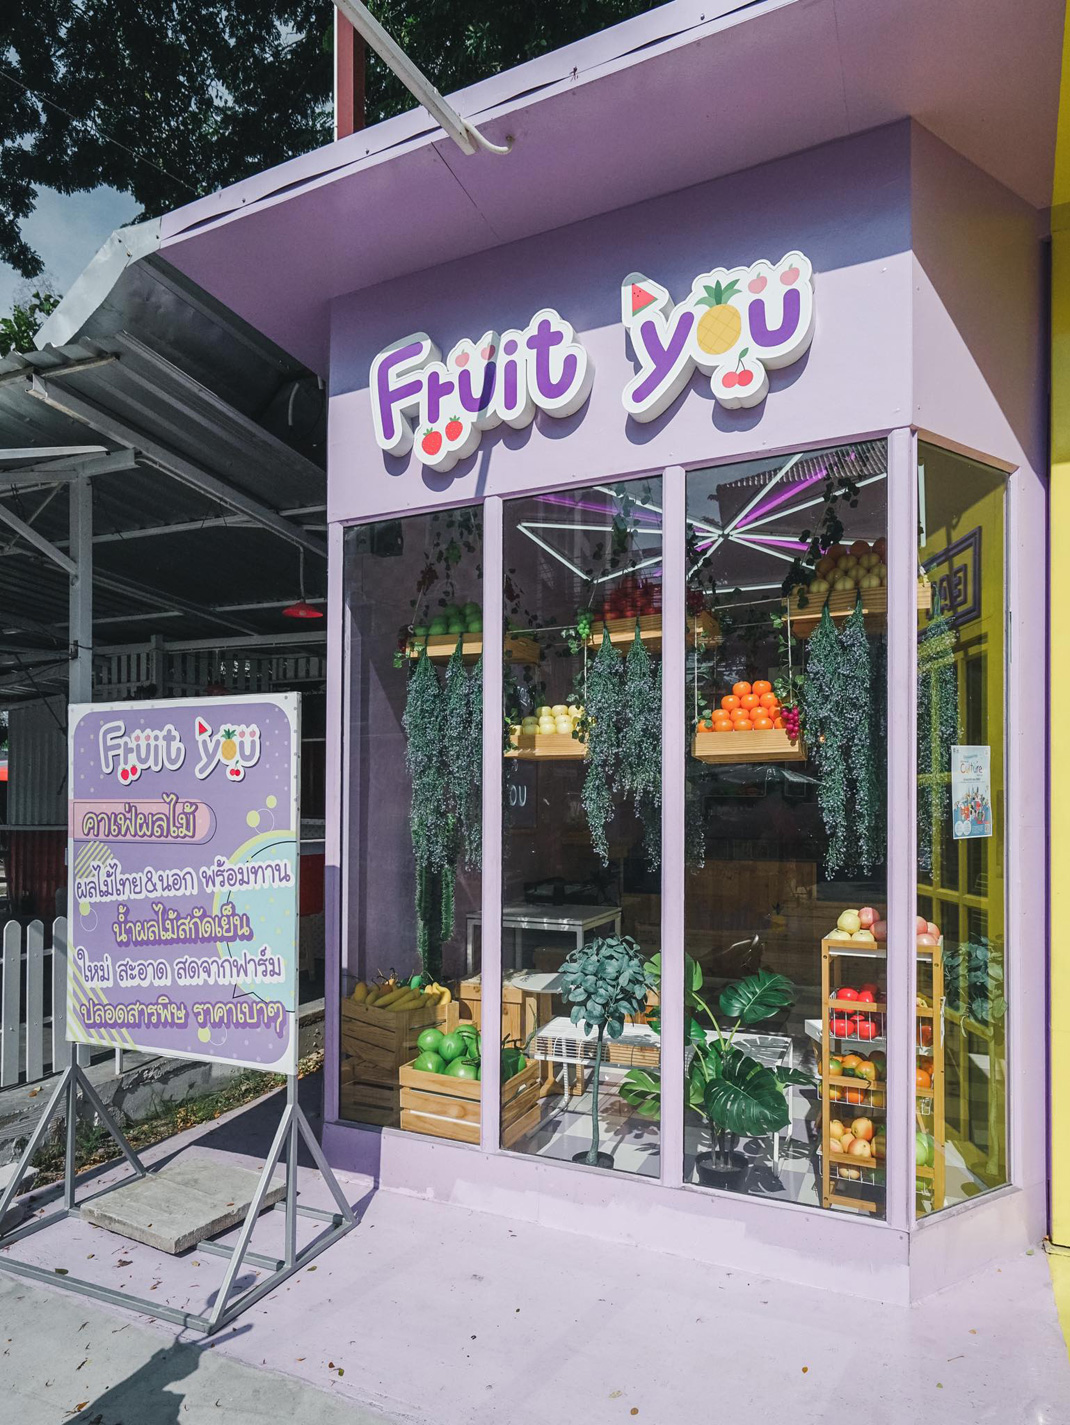 有机水果餐厅Fruit you X Chafe 泰国 饮品店 logo设计 纯色 logo设计 vi设计 空间设计 视觉餐饮